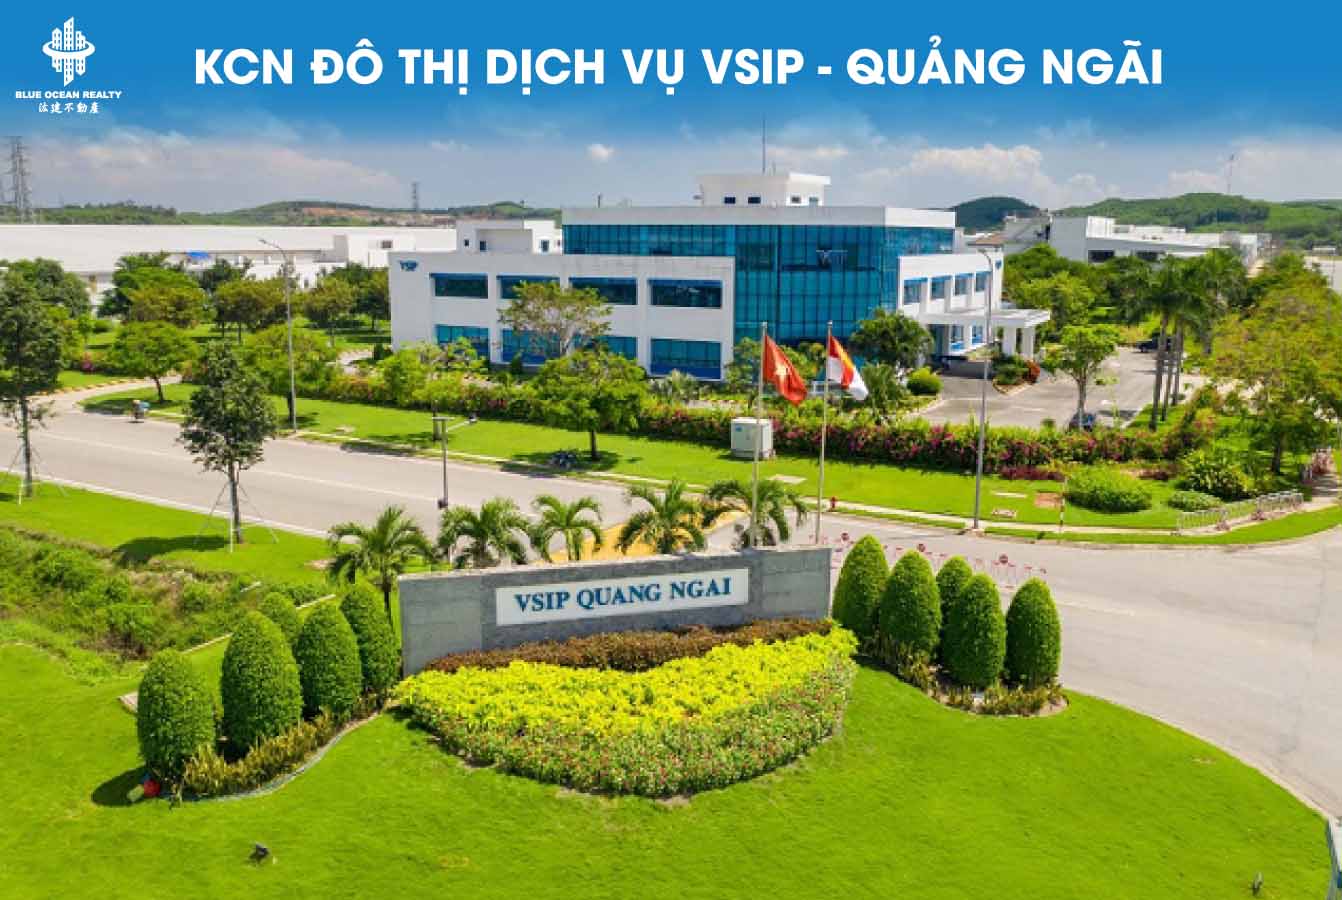 KCN đô thị dịch vụ VSIP - Quảng Ngãi